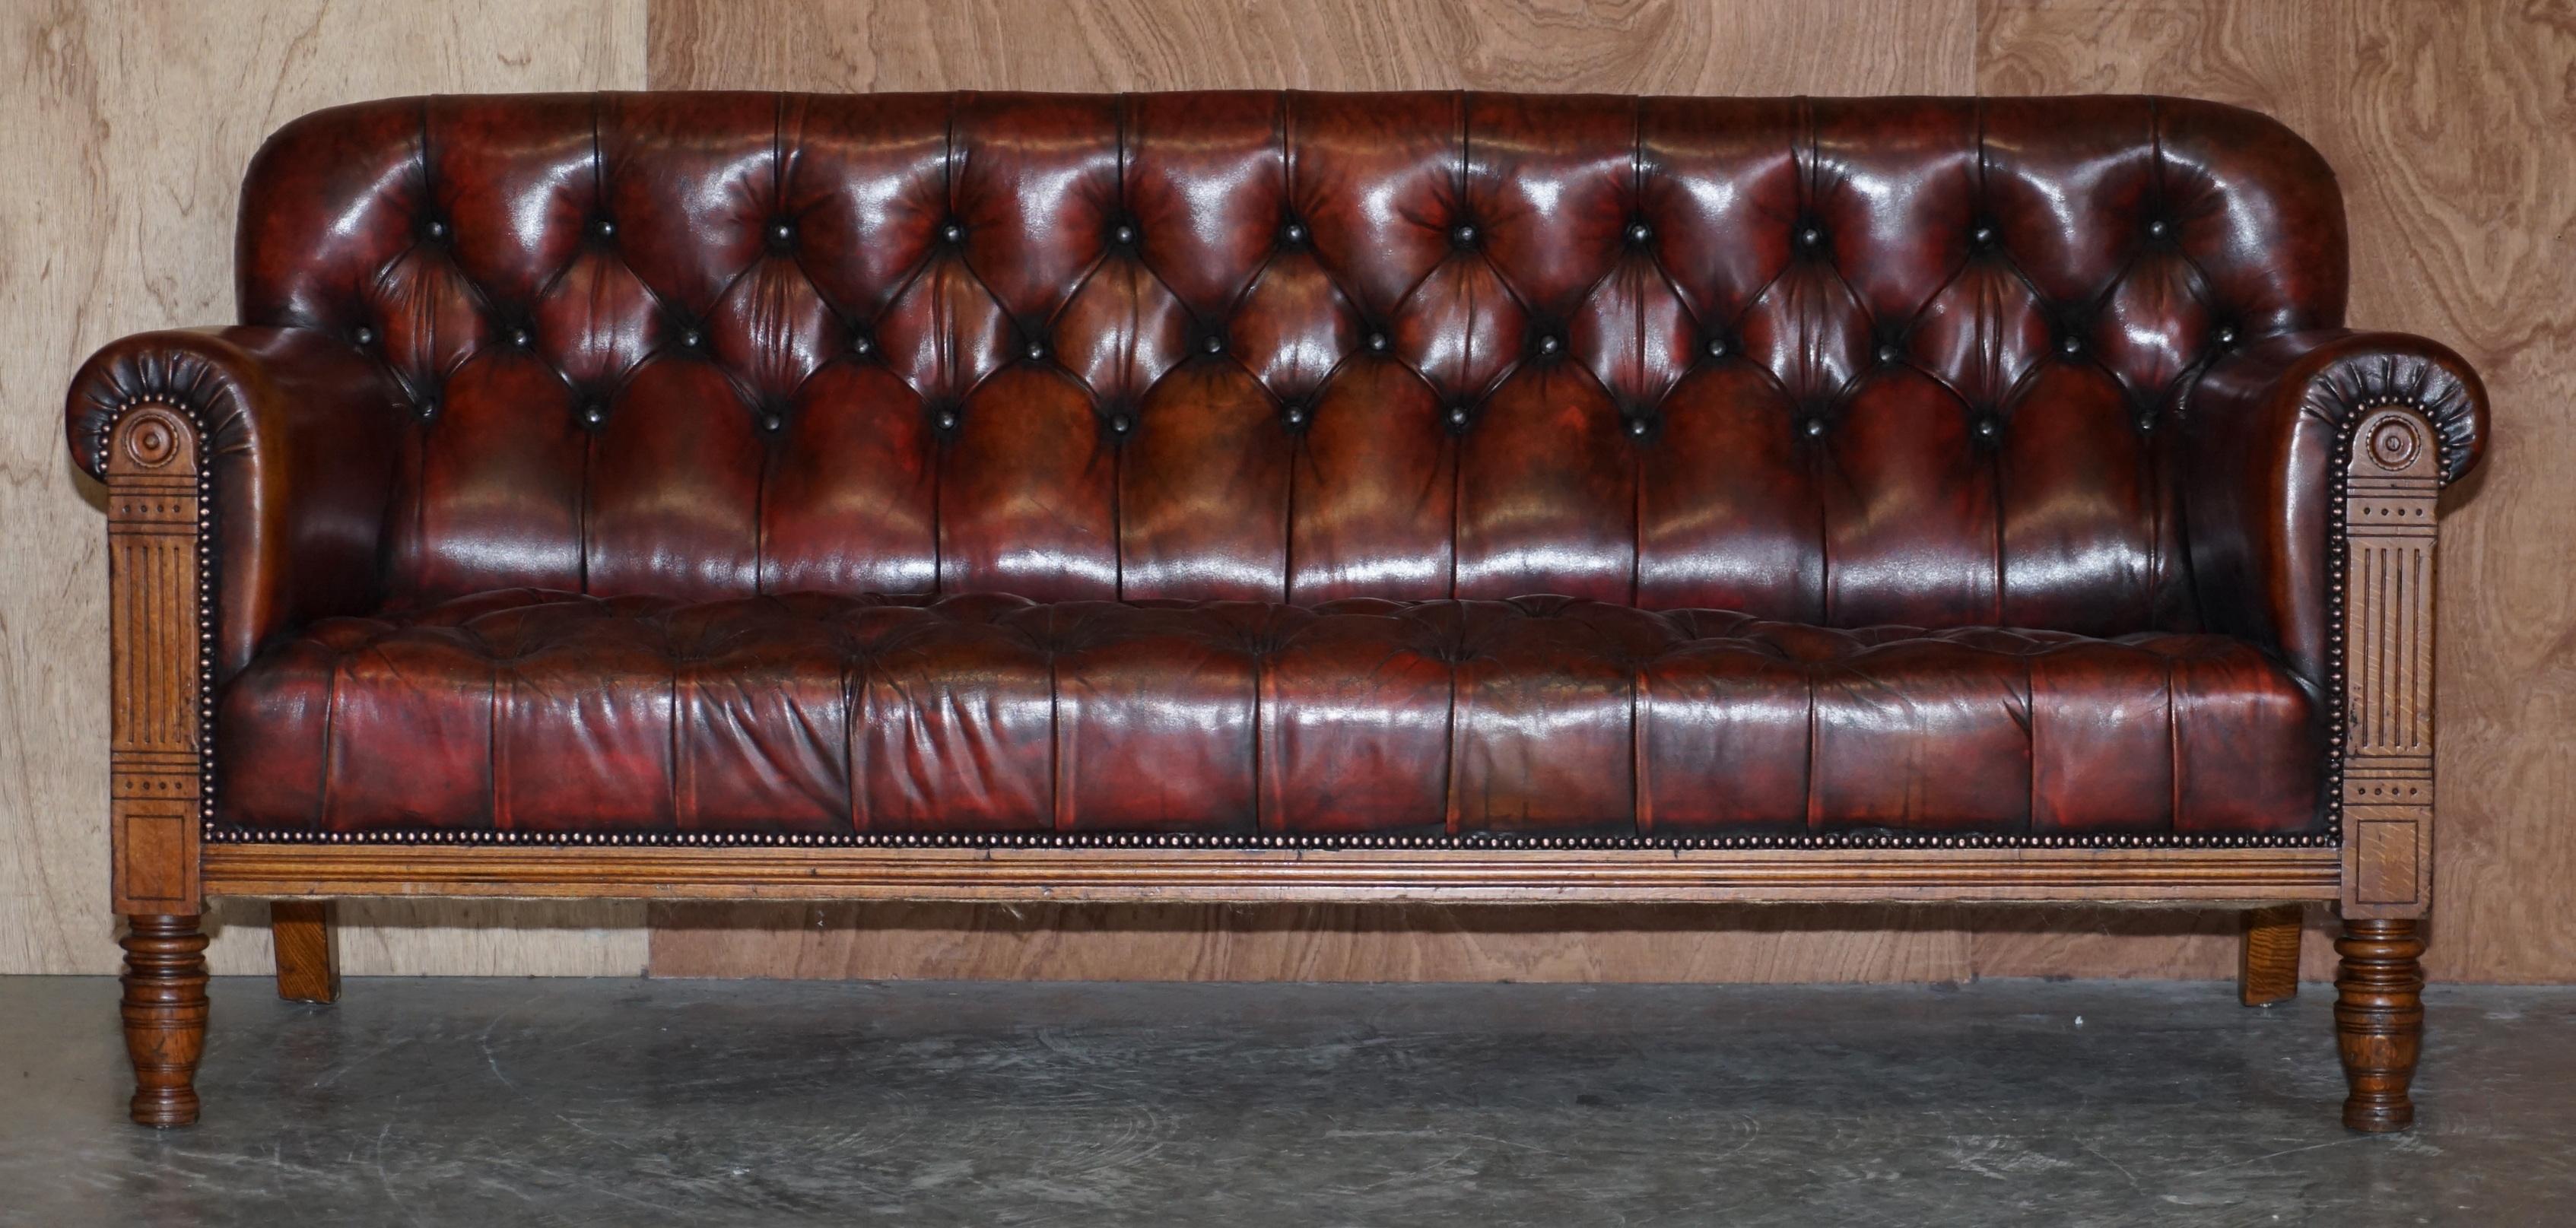 Wir freuen uns, diese Ausstellung Qualität Wylie & Lochhead von Glasgow um 1860 vollständig restauriert Hand gefärbtes braunes Leder Chesterfield Sofa zum Verkauf anbieten

Dieses Stück ist absolut erhaben, hergestellt von den Genies, die Wylie &